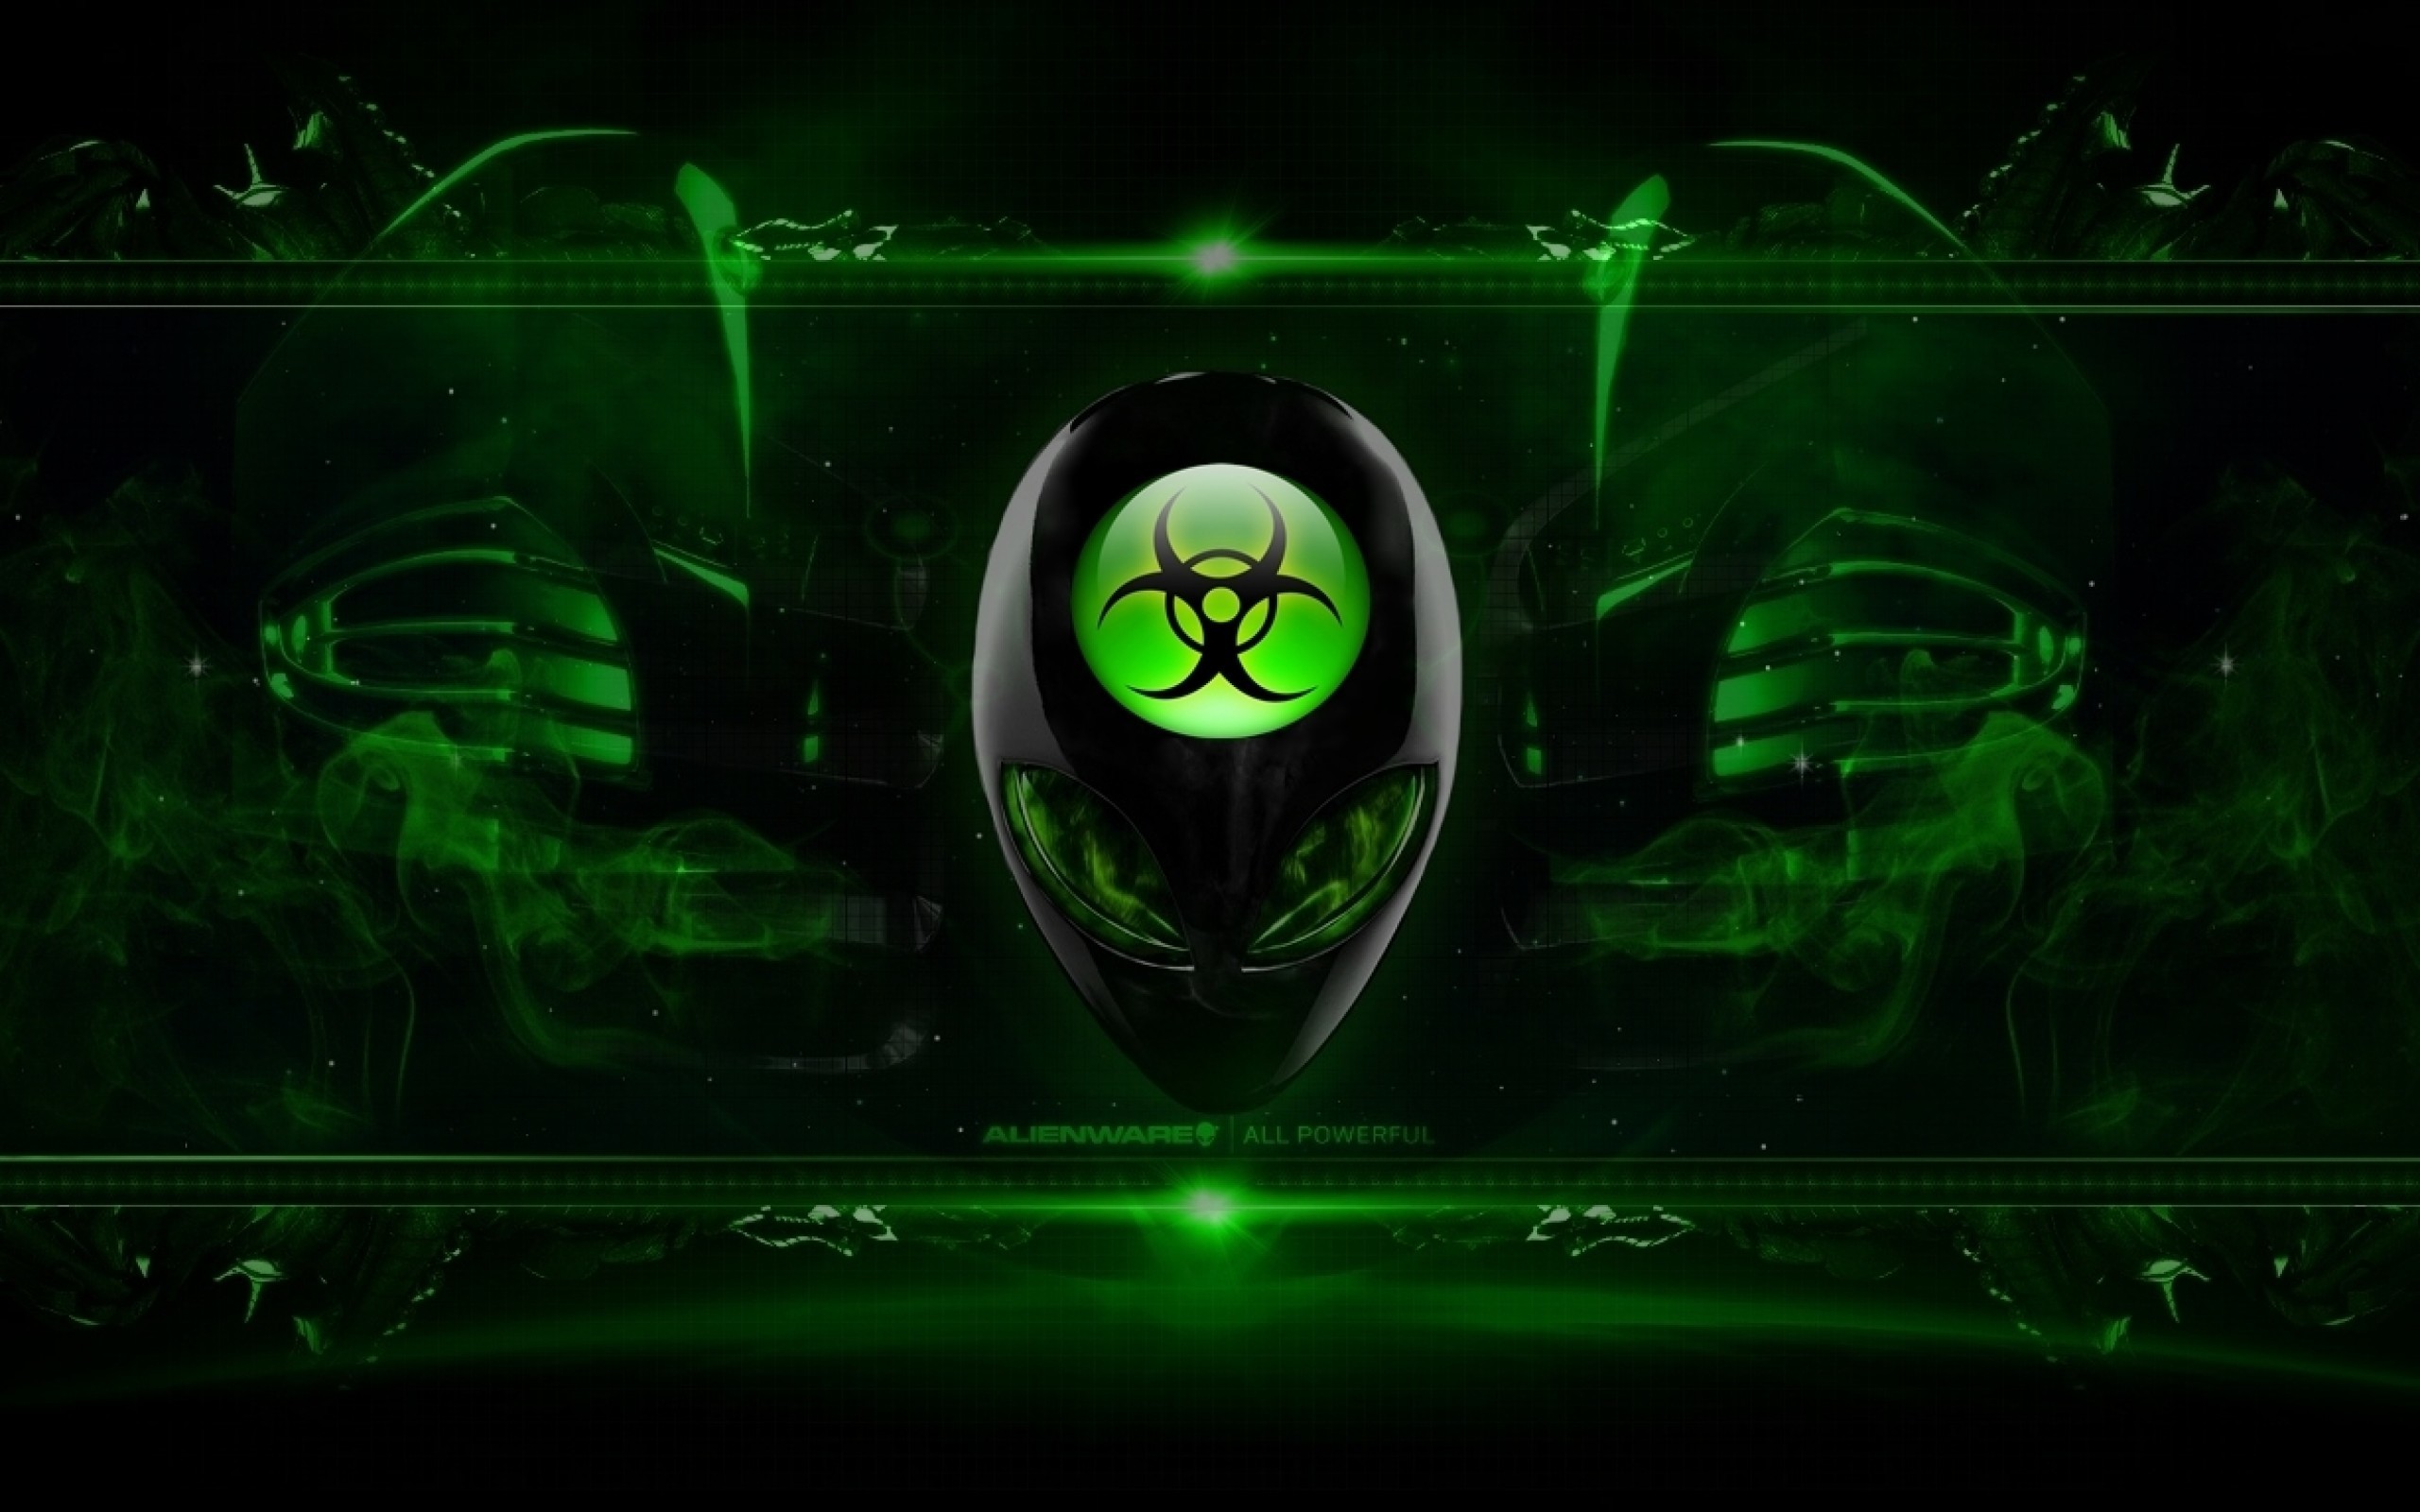 2560x1600 Filename: Alienware-Desktop-Background-Radioactive-Green-.jpg